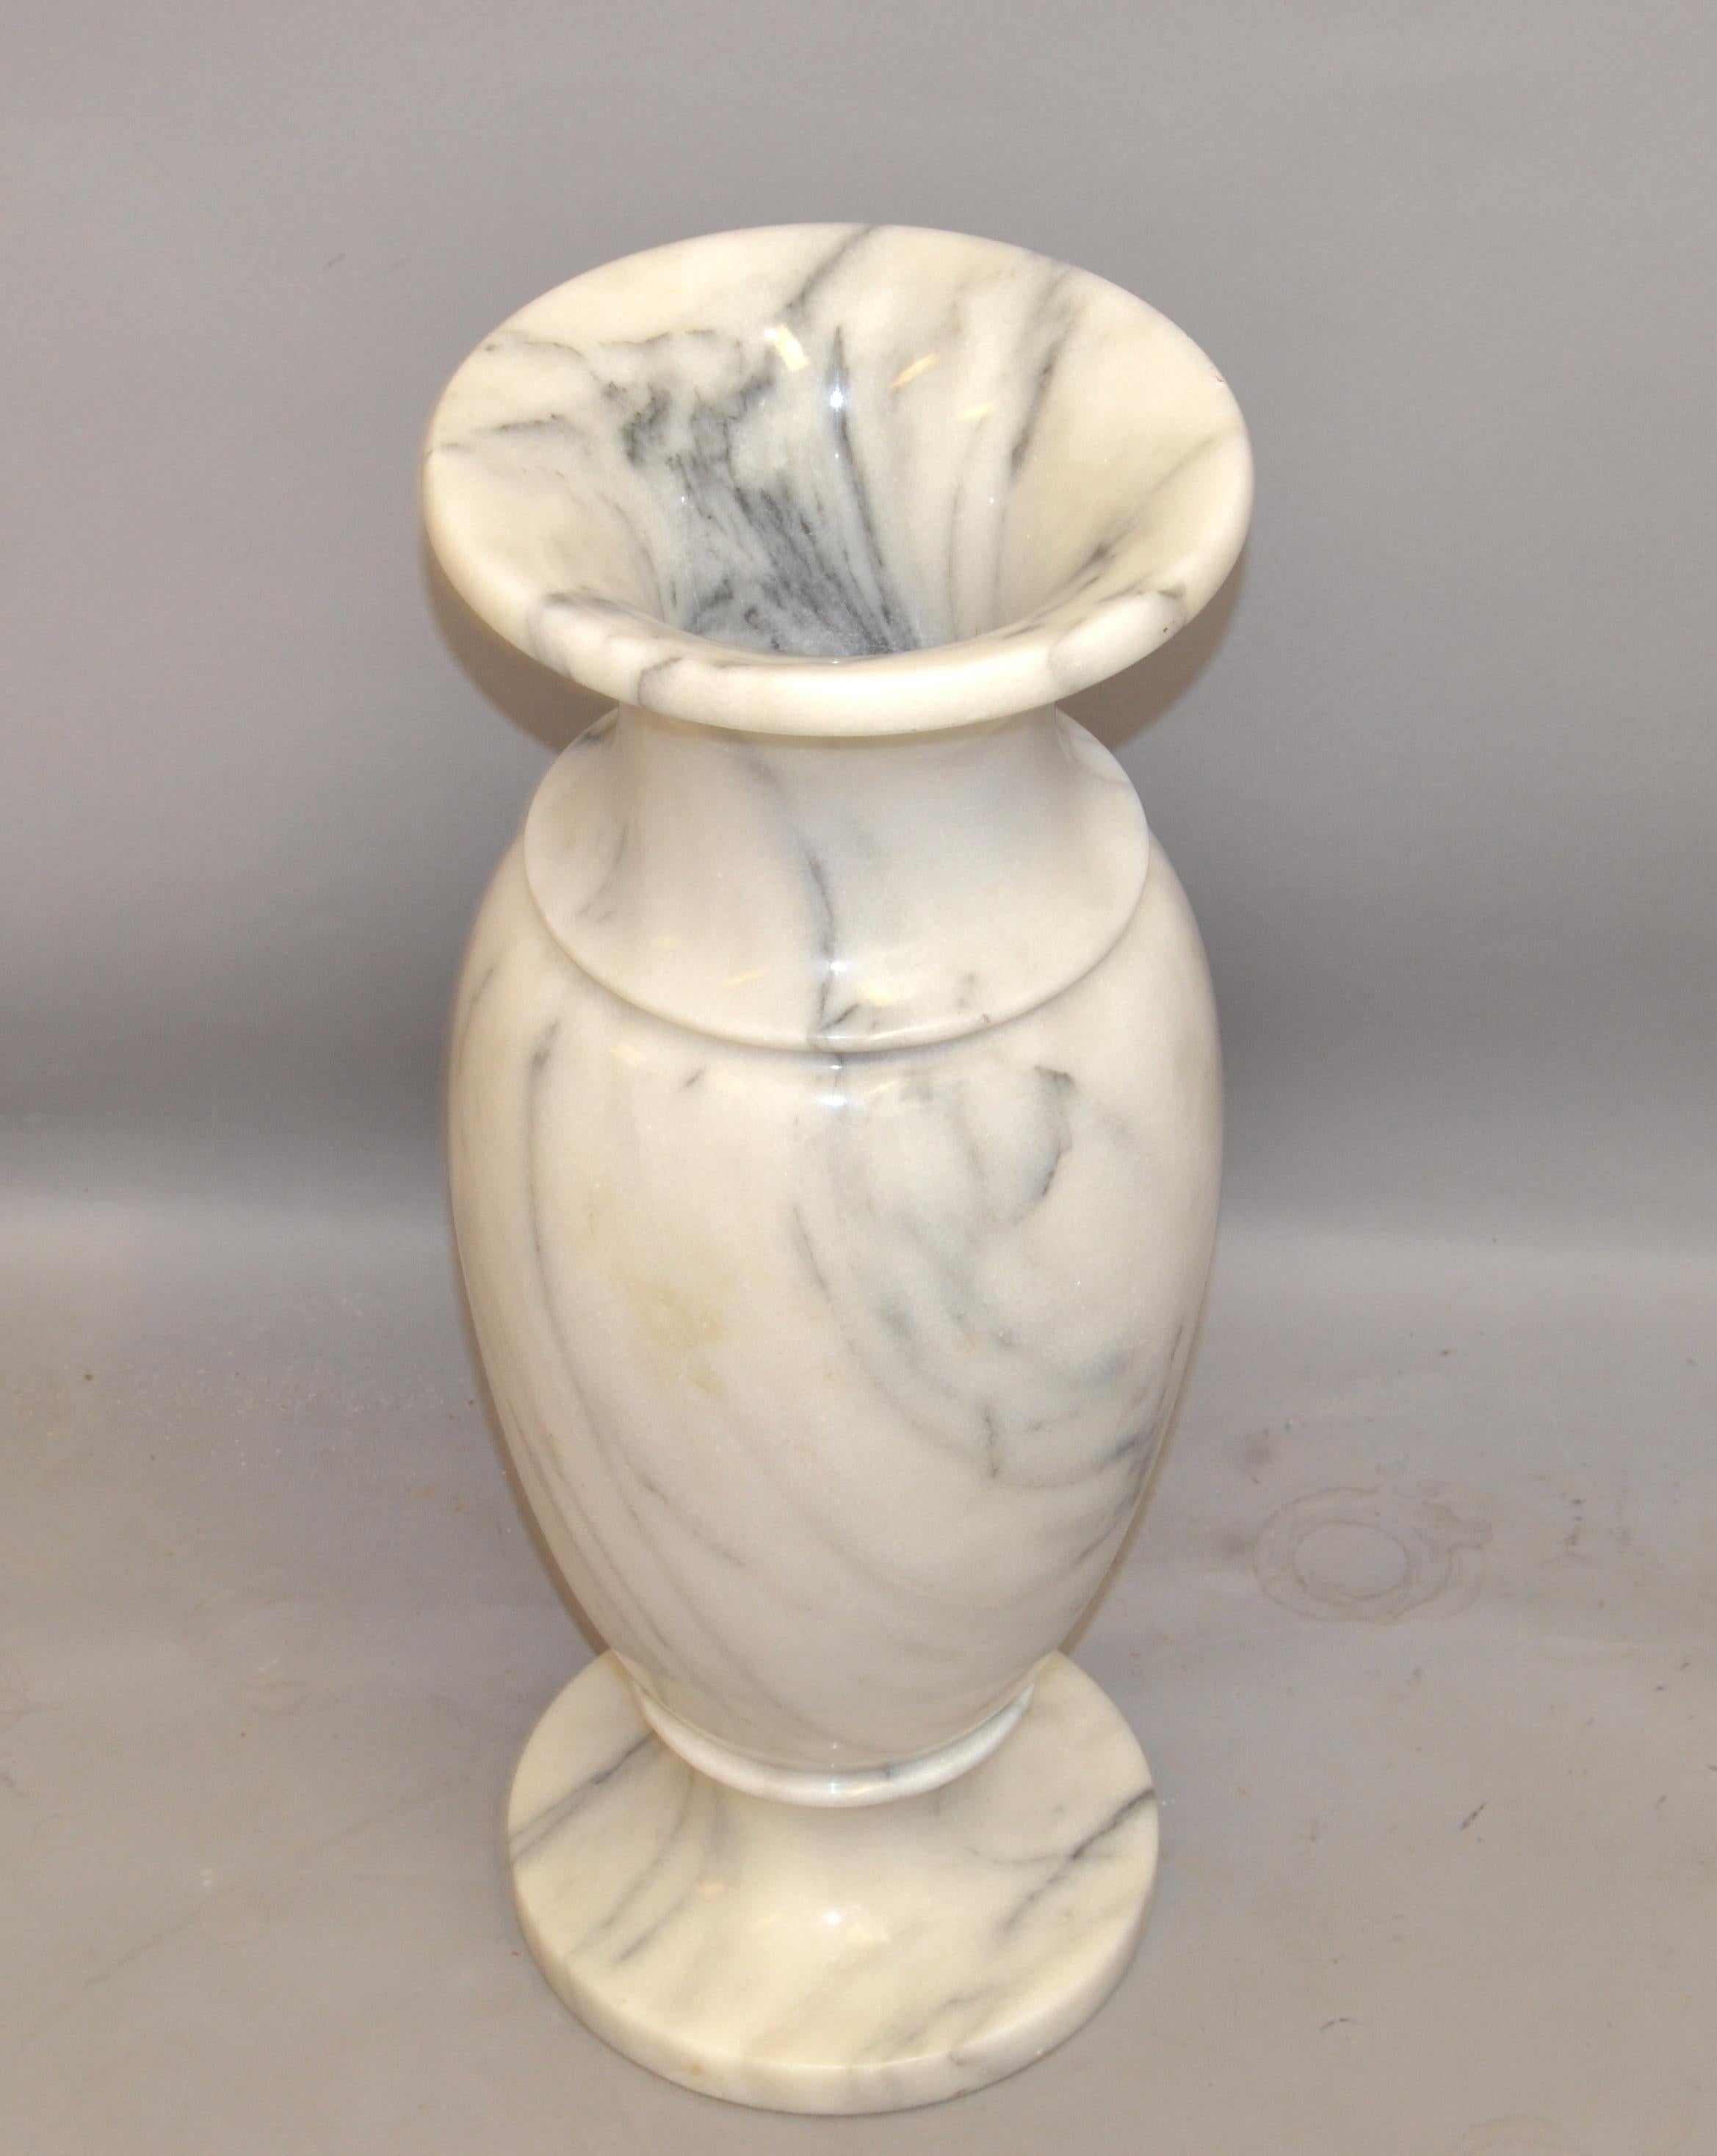 Art Deco Stil 20. Jahrhundert Hand geschnitzt geädert weiß Carrara Marmor Vase Urne Gefäß Italien.
Diese Vase ist sehr schwer und erstaunlich gut verarbeitet, sehr dekorativ auf einem klassischen italienischen Tisch.
In sehr gutem Vintage-Zustand